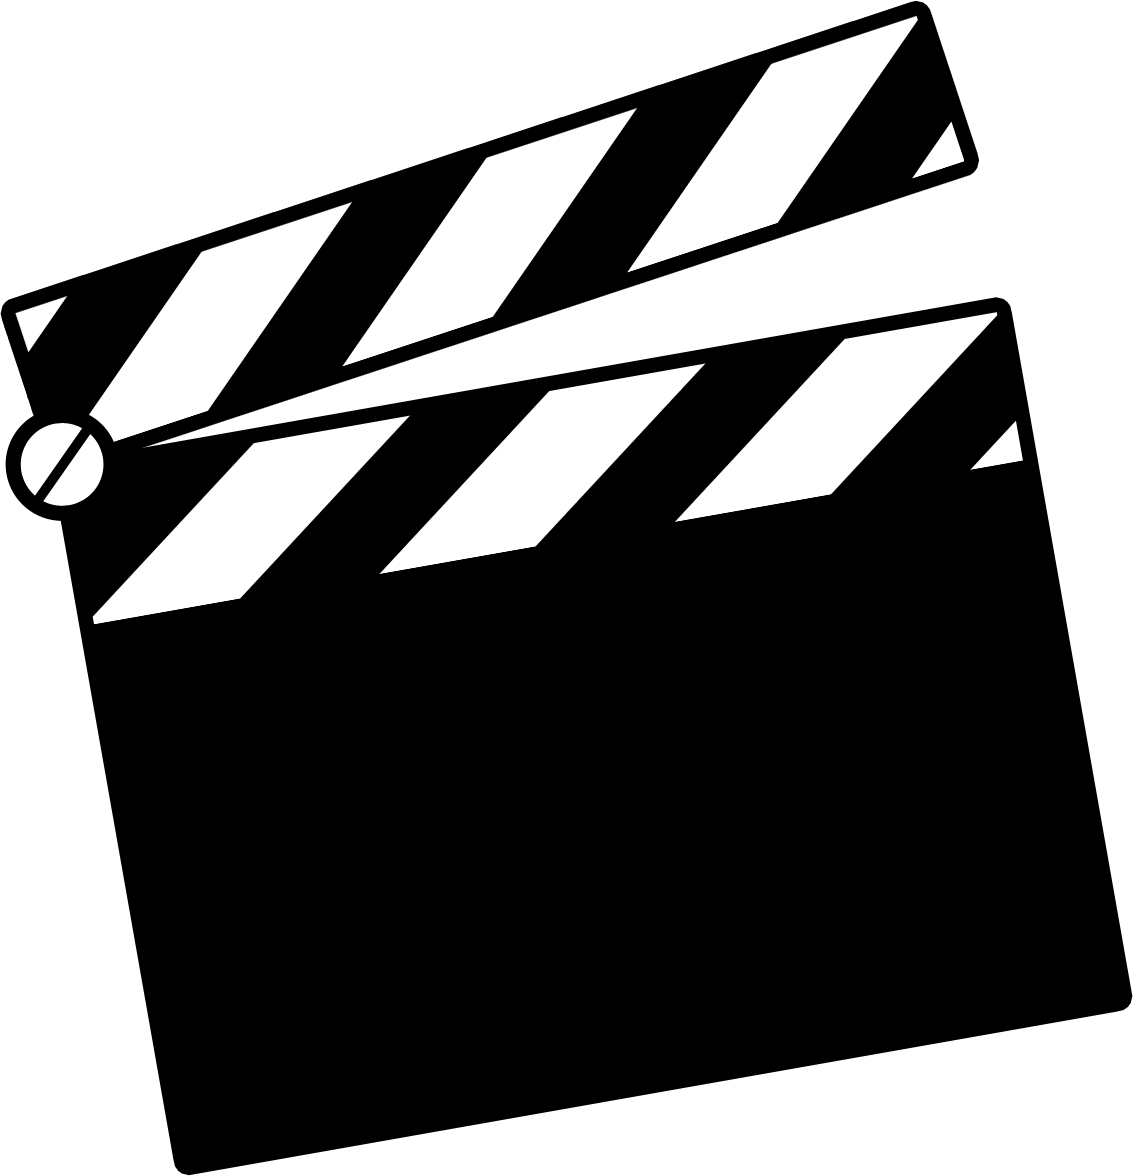 LOGO Design For Klip Vault Retro Video Tape Inspired Emblem for  Entertainment Industry | AI Logo Maker